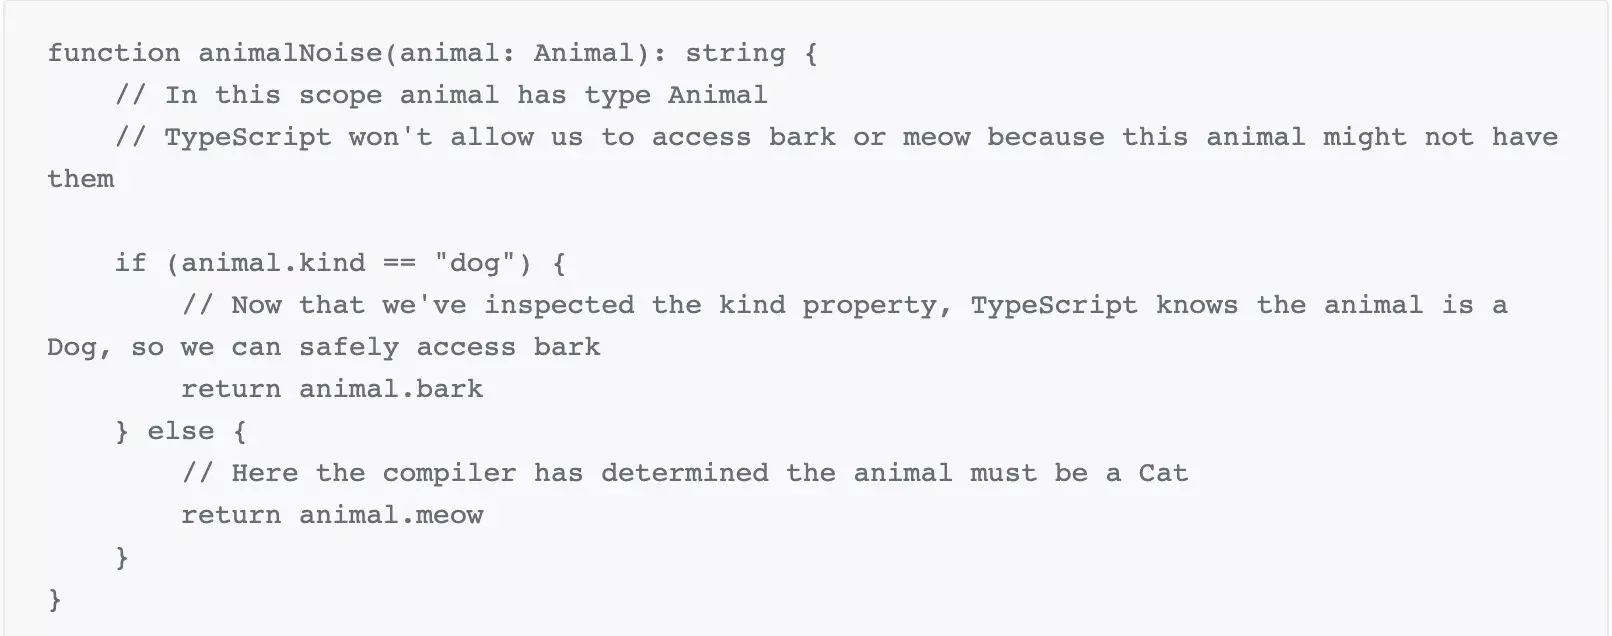 function animalNoise(animal: Animal): string {